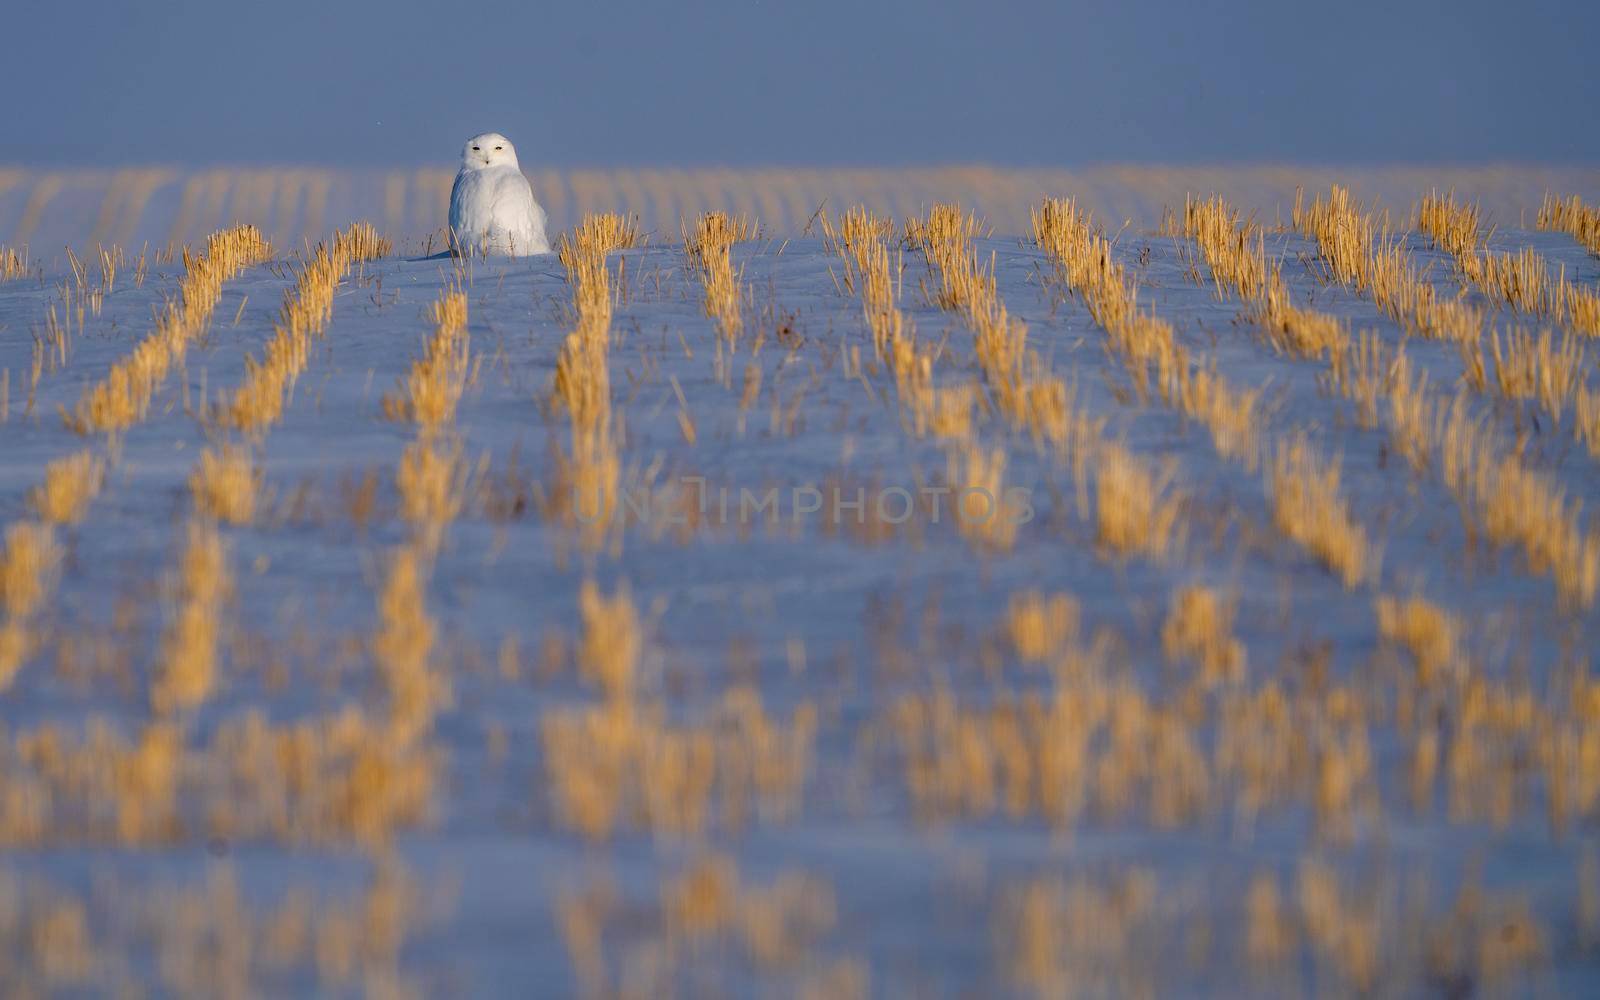 Snowy Owl in Prairies of Saskatchewan Canada